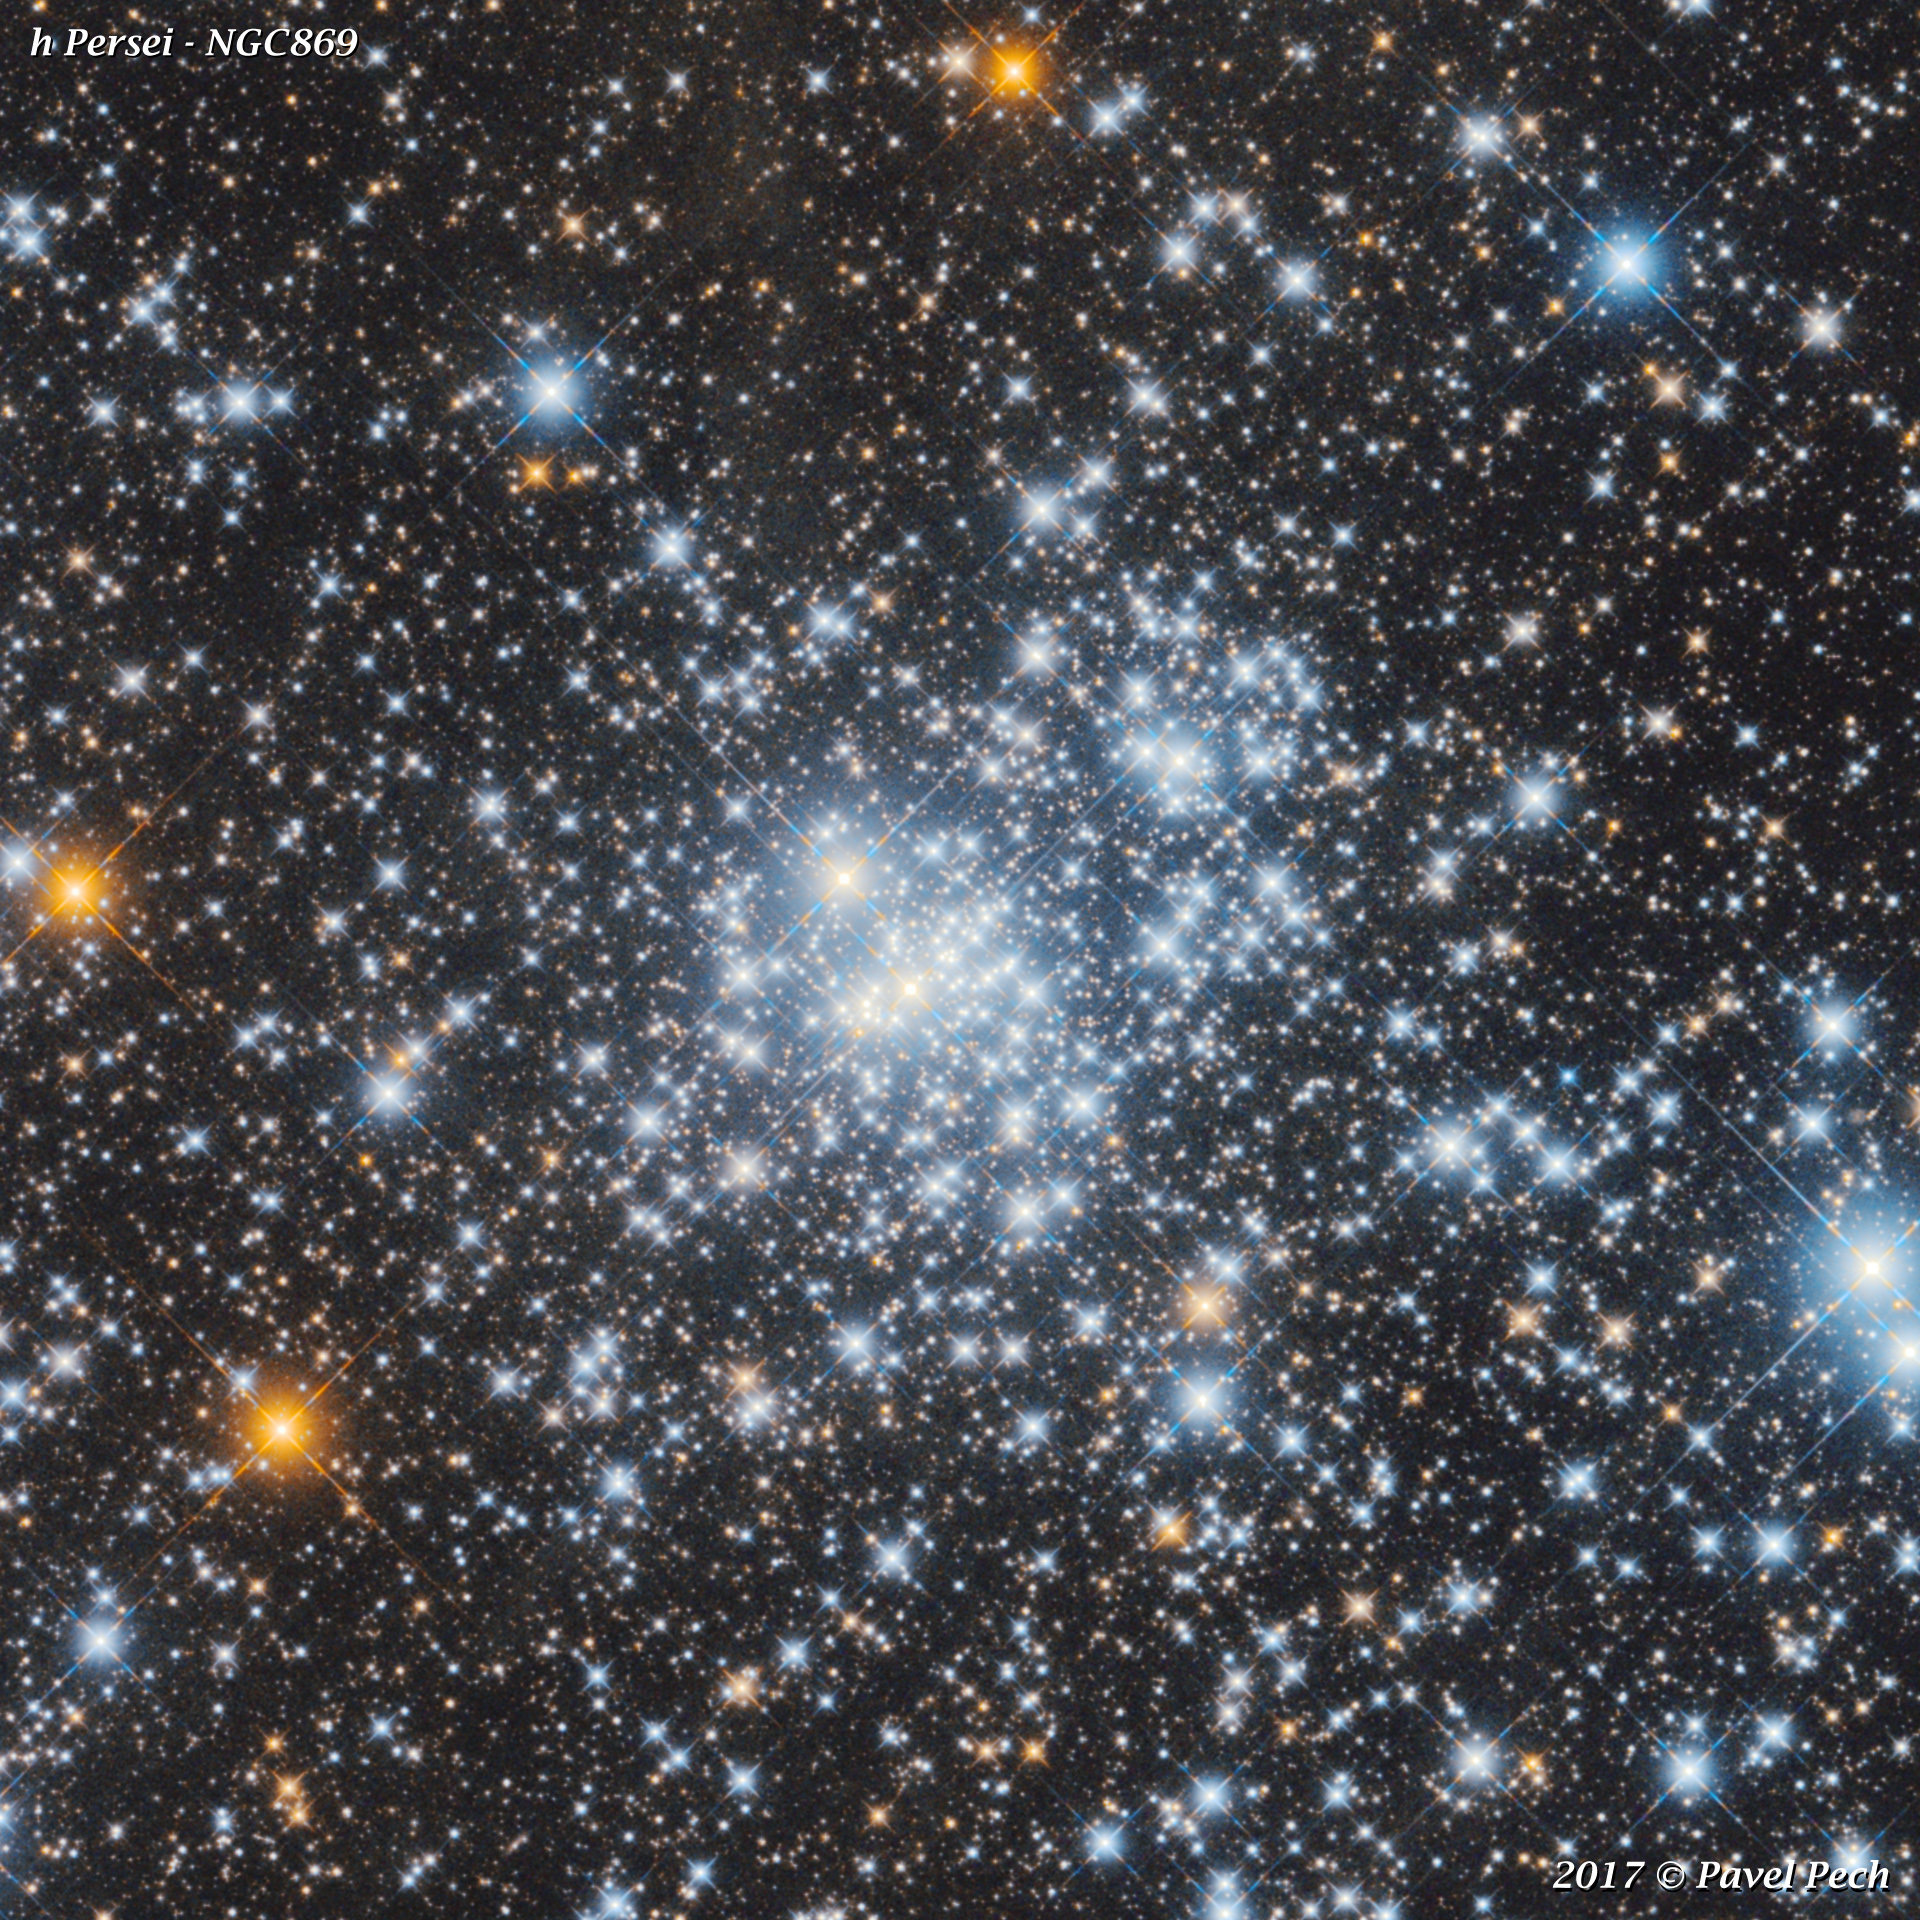 h Persei - NGC869